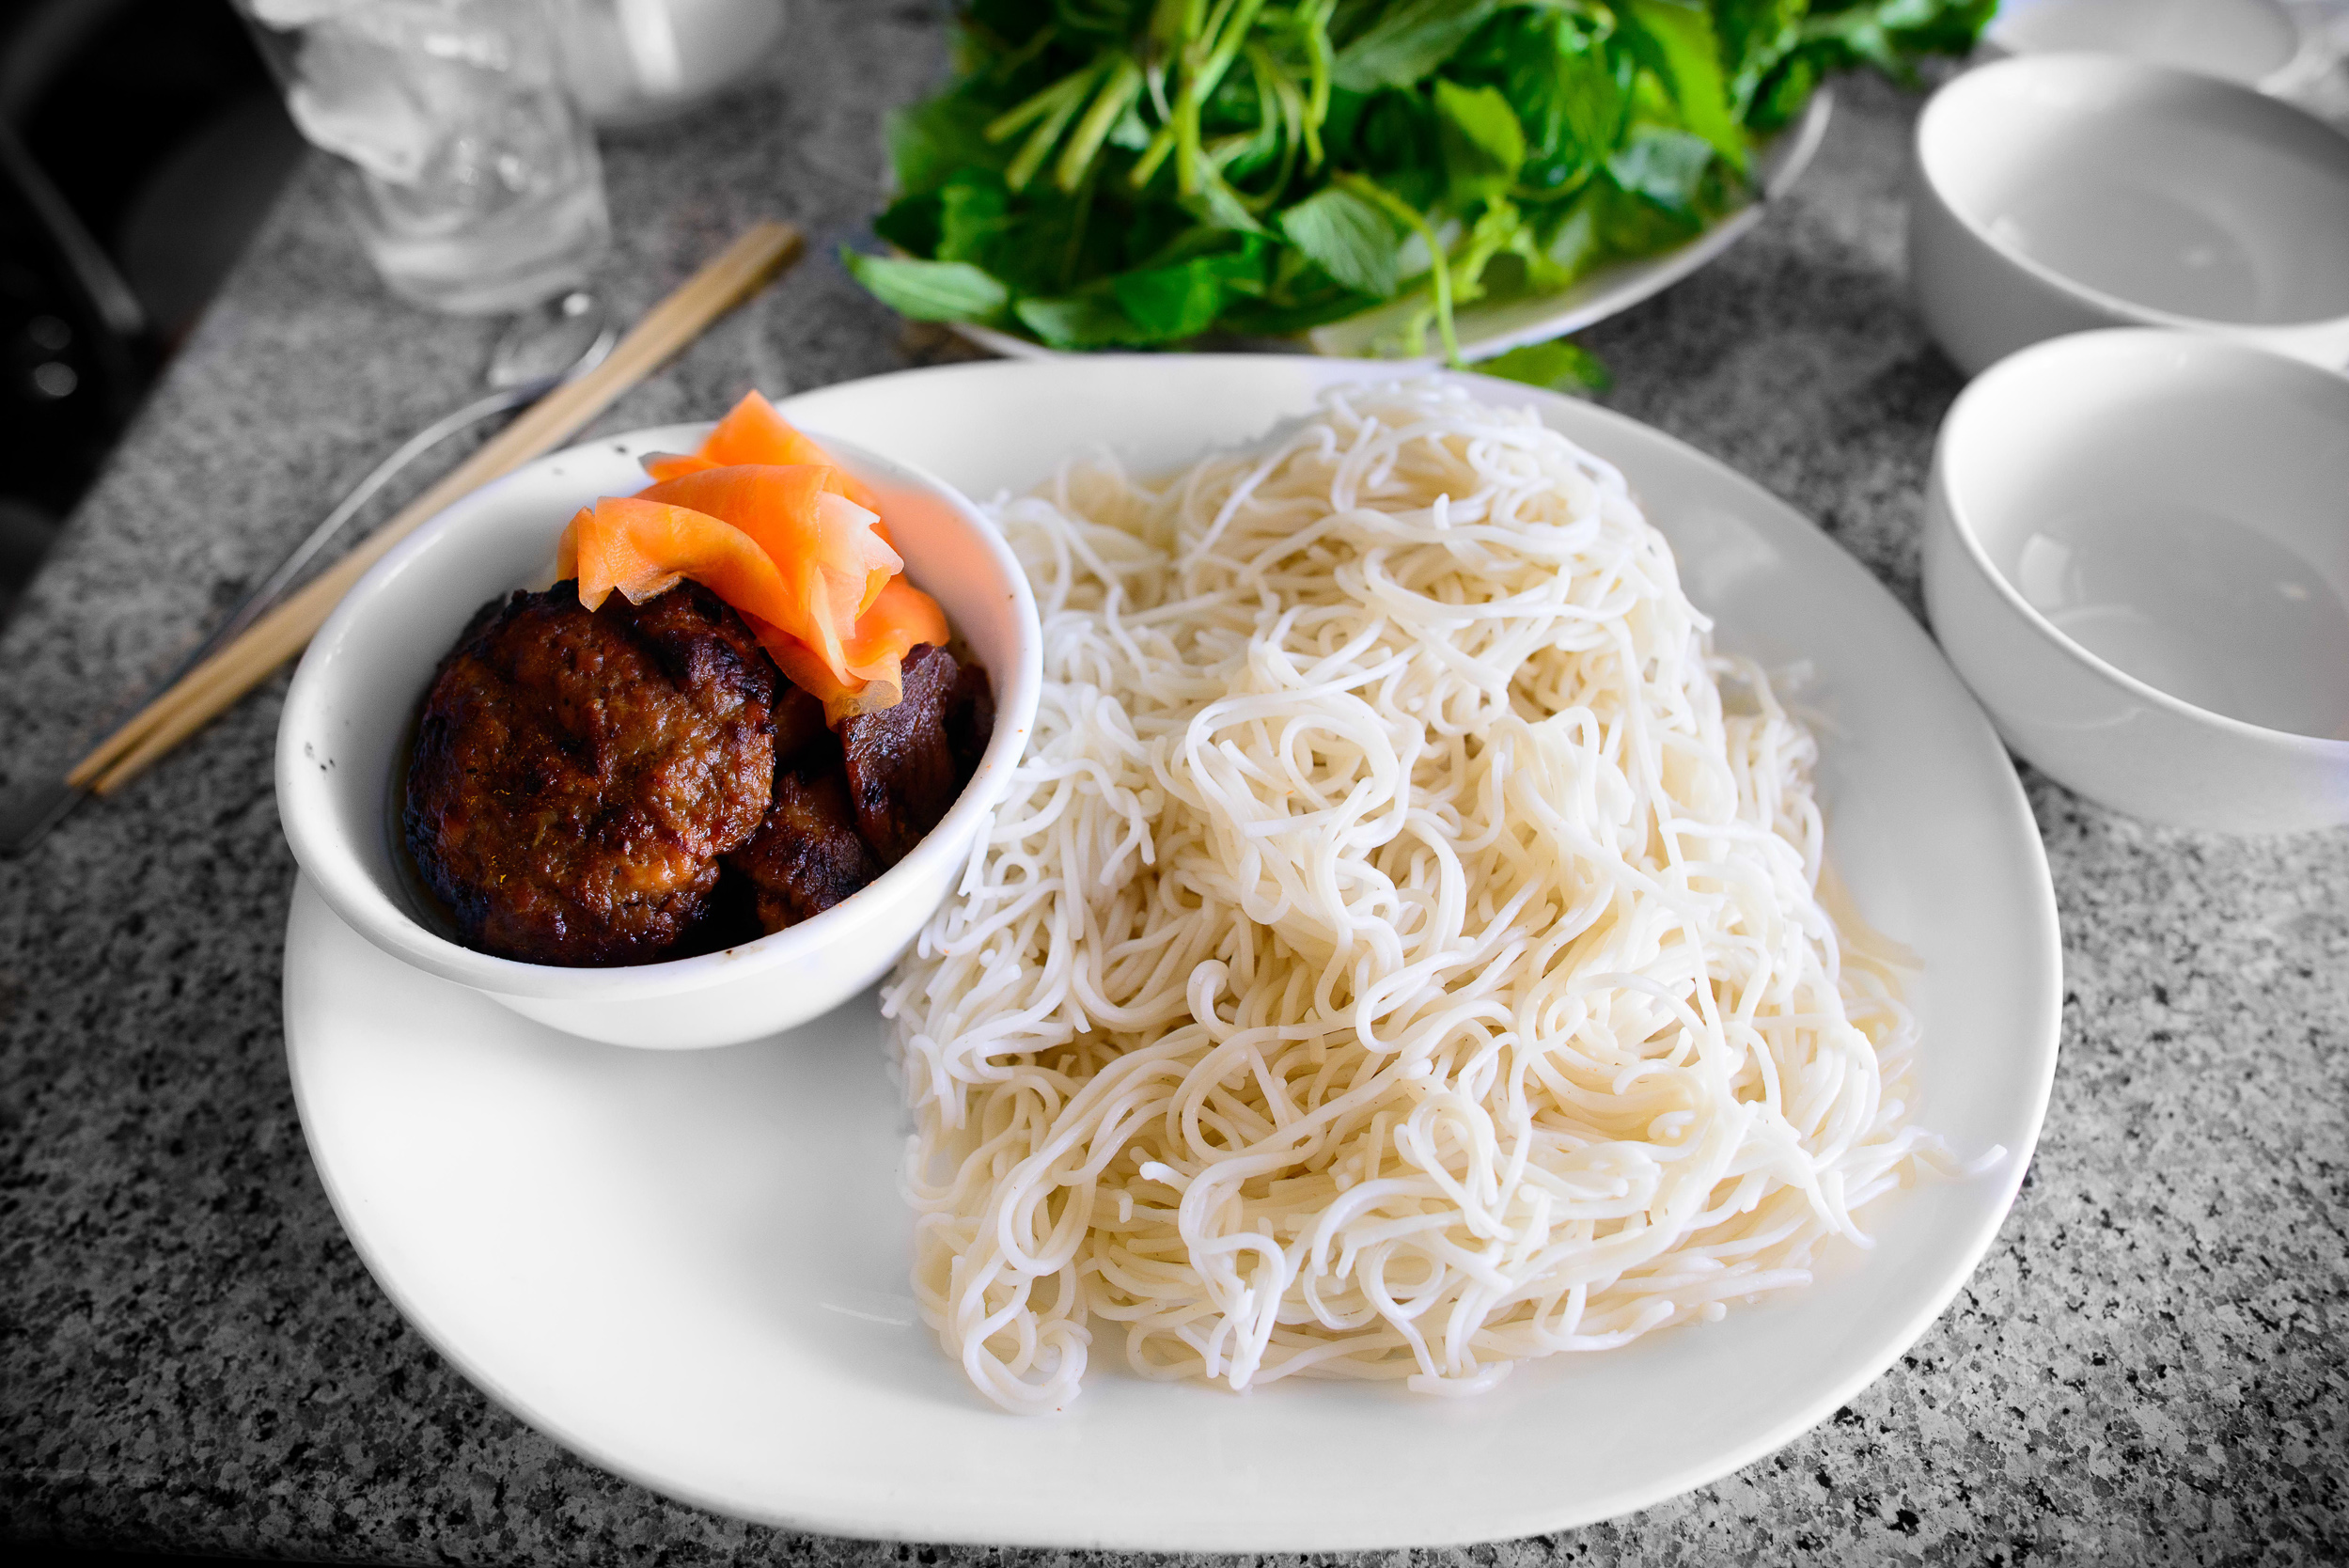 banh cuon thit cha lua, Ha-Noi style BBQ pork w/ rice vermicelli